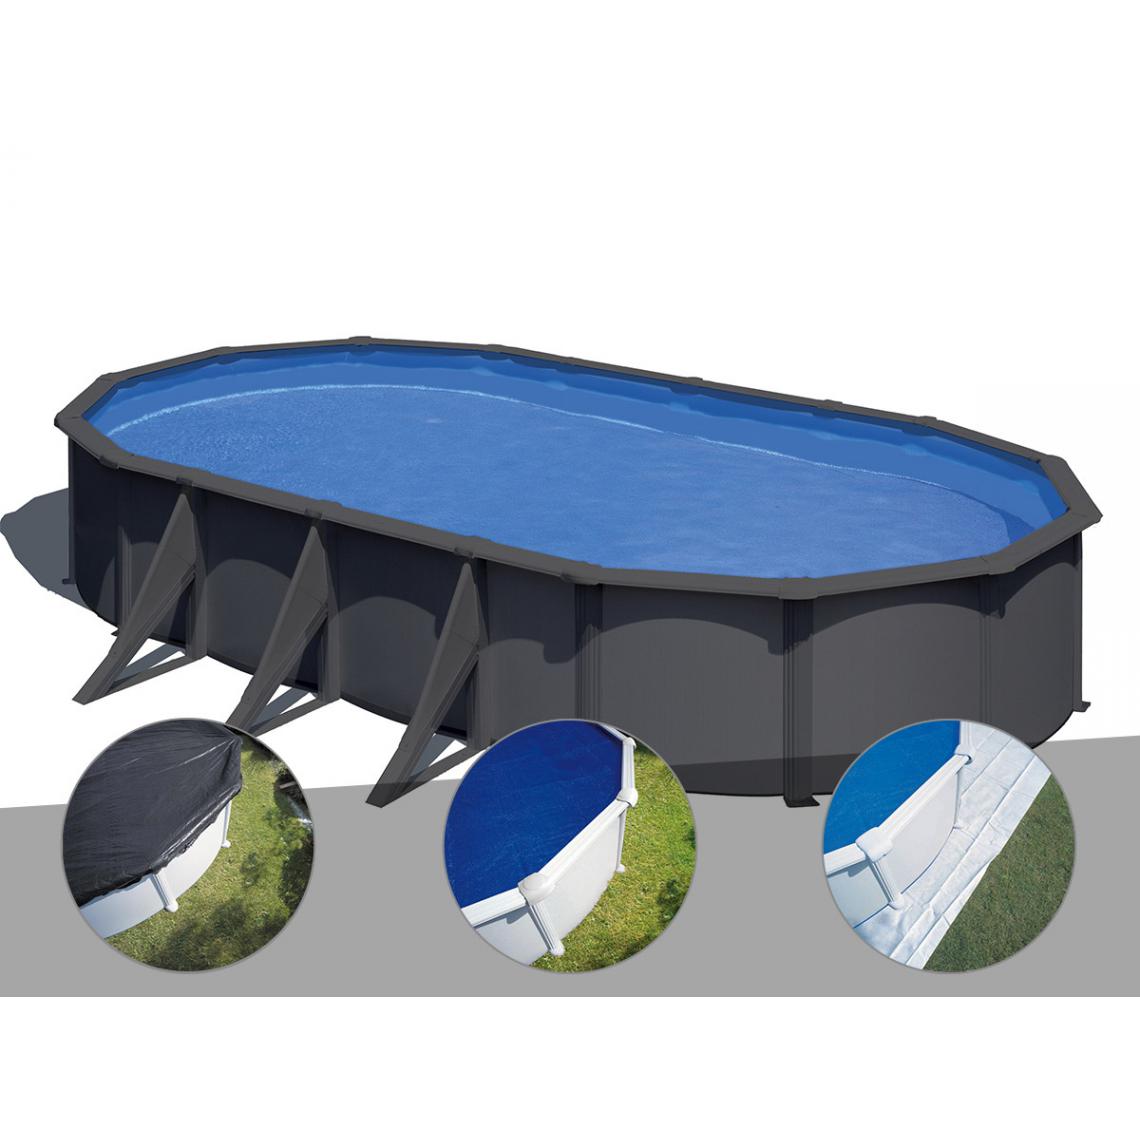 Gre - Kit piscine acier gris anthracite Gré Louko ovale 7,44 x 3,99 x 1,22 m + Bâche d'hivernage + Bâche à bulles + Tapis de sol - Piscines acier et résine